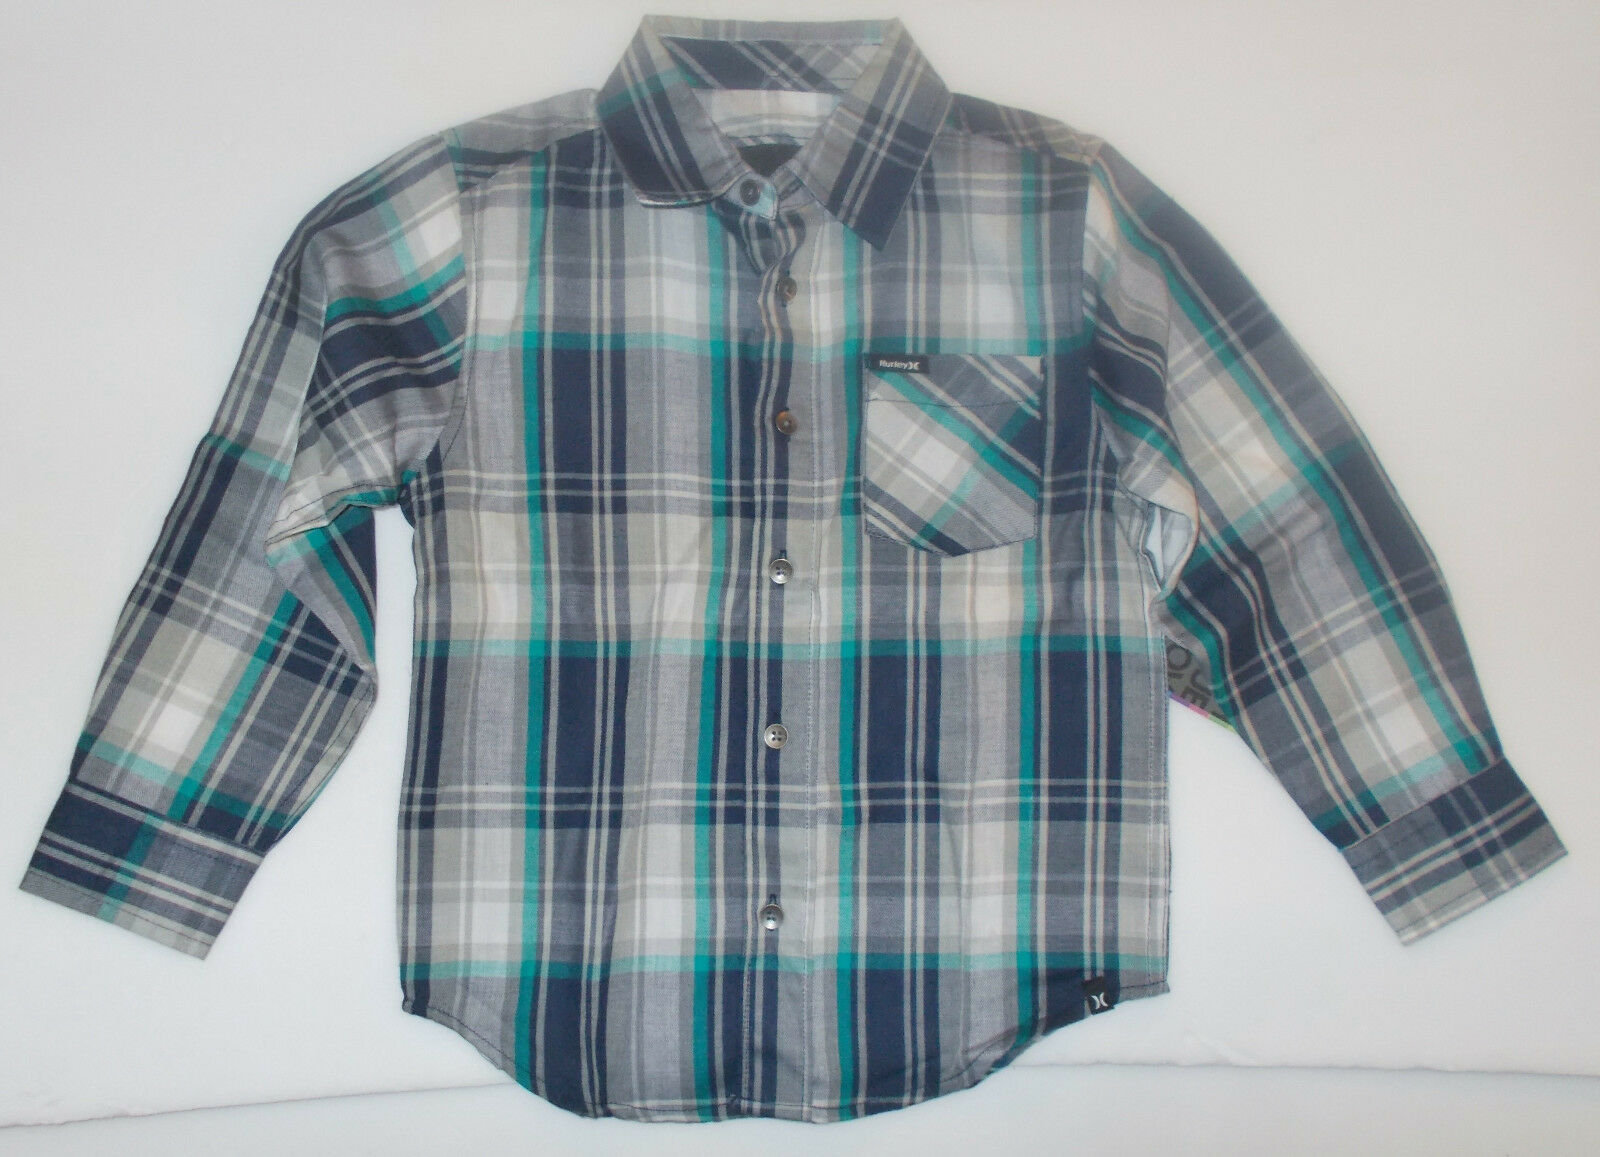 Hurley Boys Long Sleeve Plaid Shirt Gray Black Blue Sizes 4,  NWT - $16.99